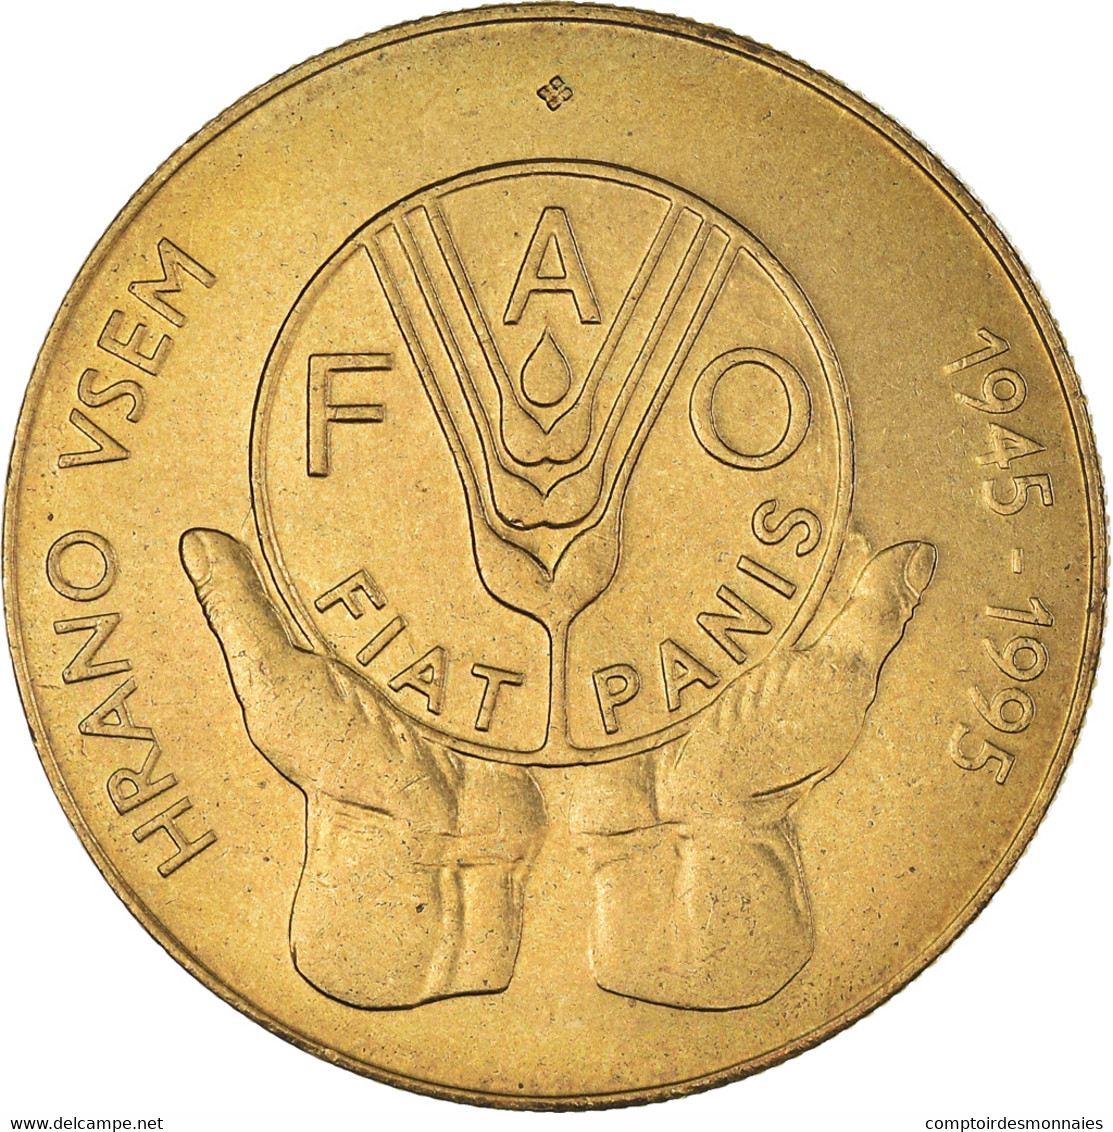 Monnaie, Slovénie, 5 Tolarjev, 1995, SUP, Nickel-Cuivre, KM:21 - Slovénie